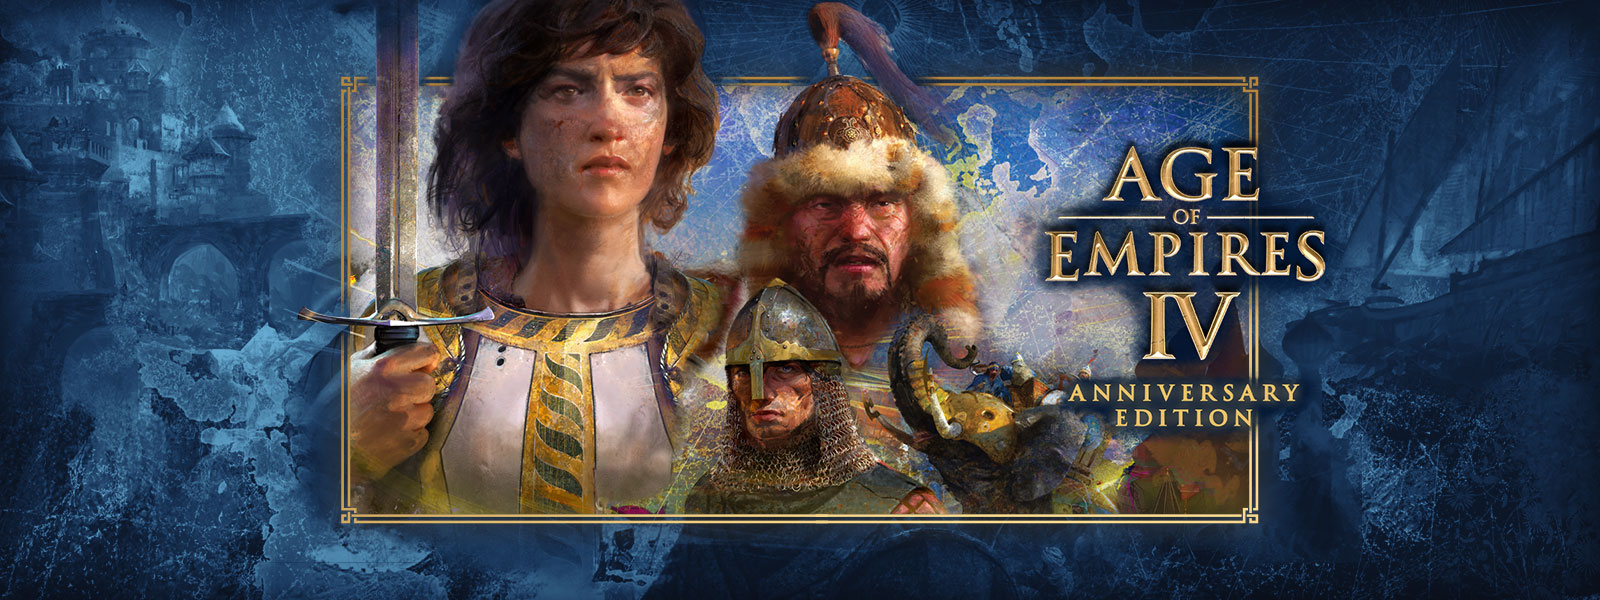 『Age of Empires IV: Anniversary Edition』、戦争シーンの 3 人のキャラクターと彼らを取り囲む武装したゾウ